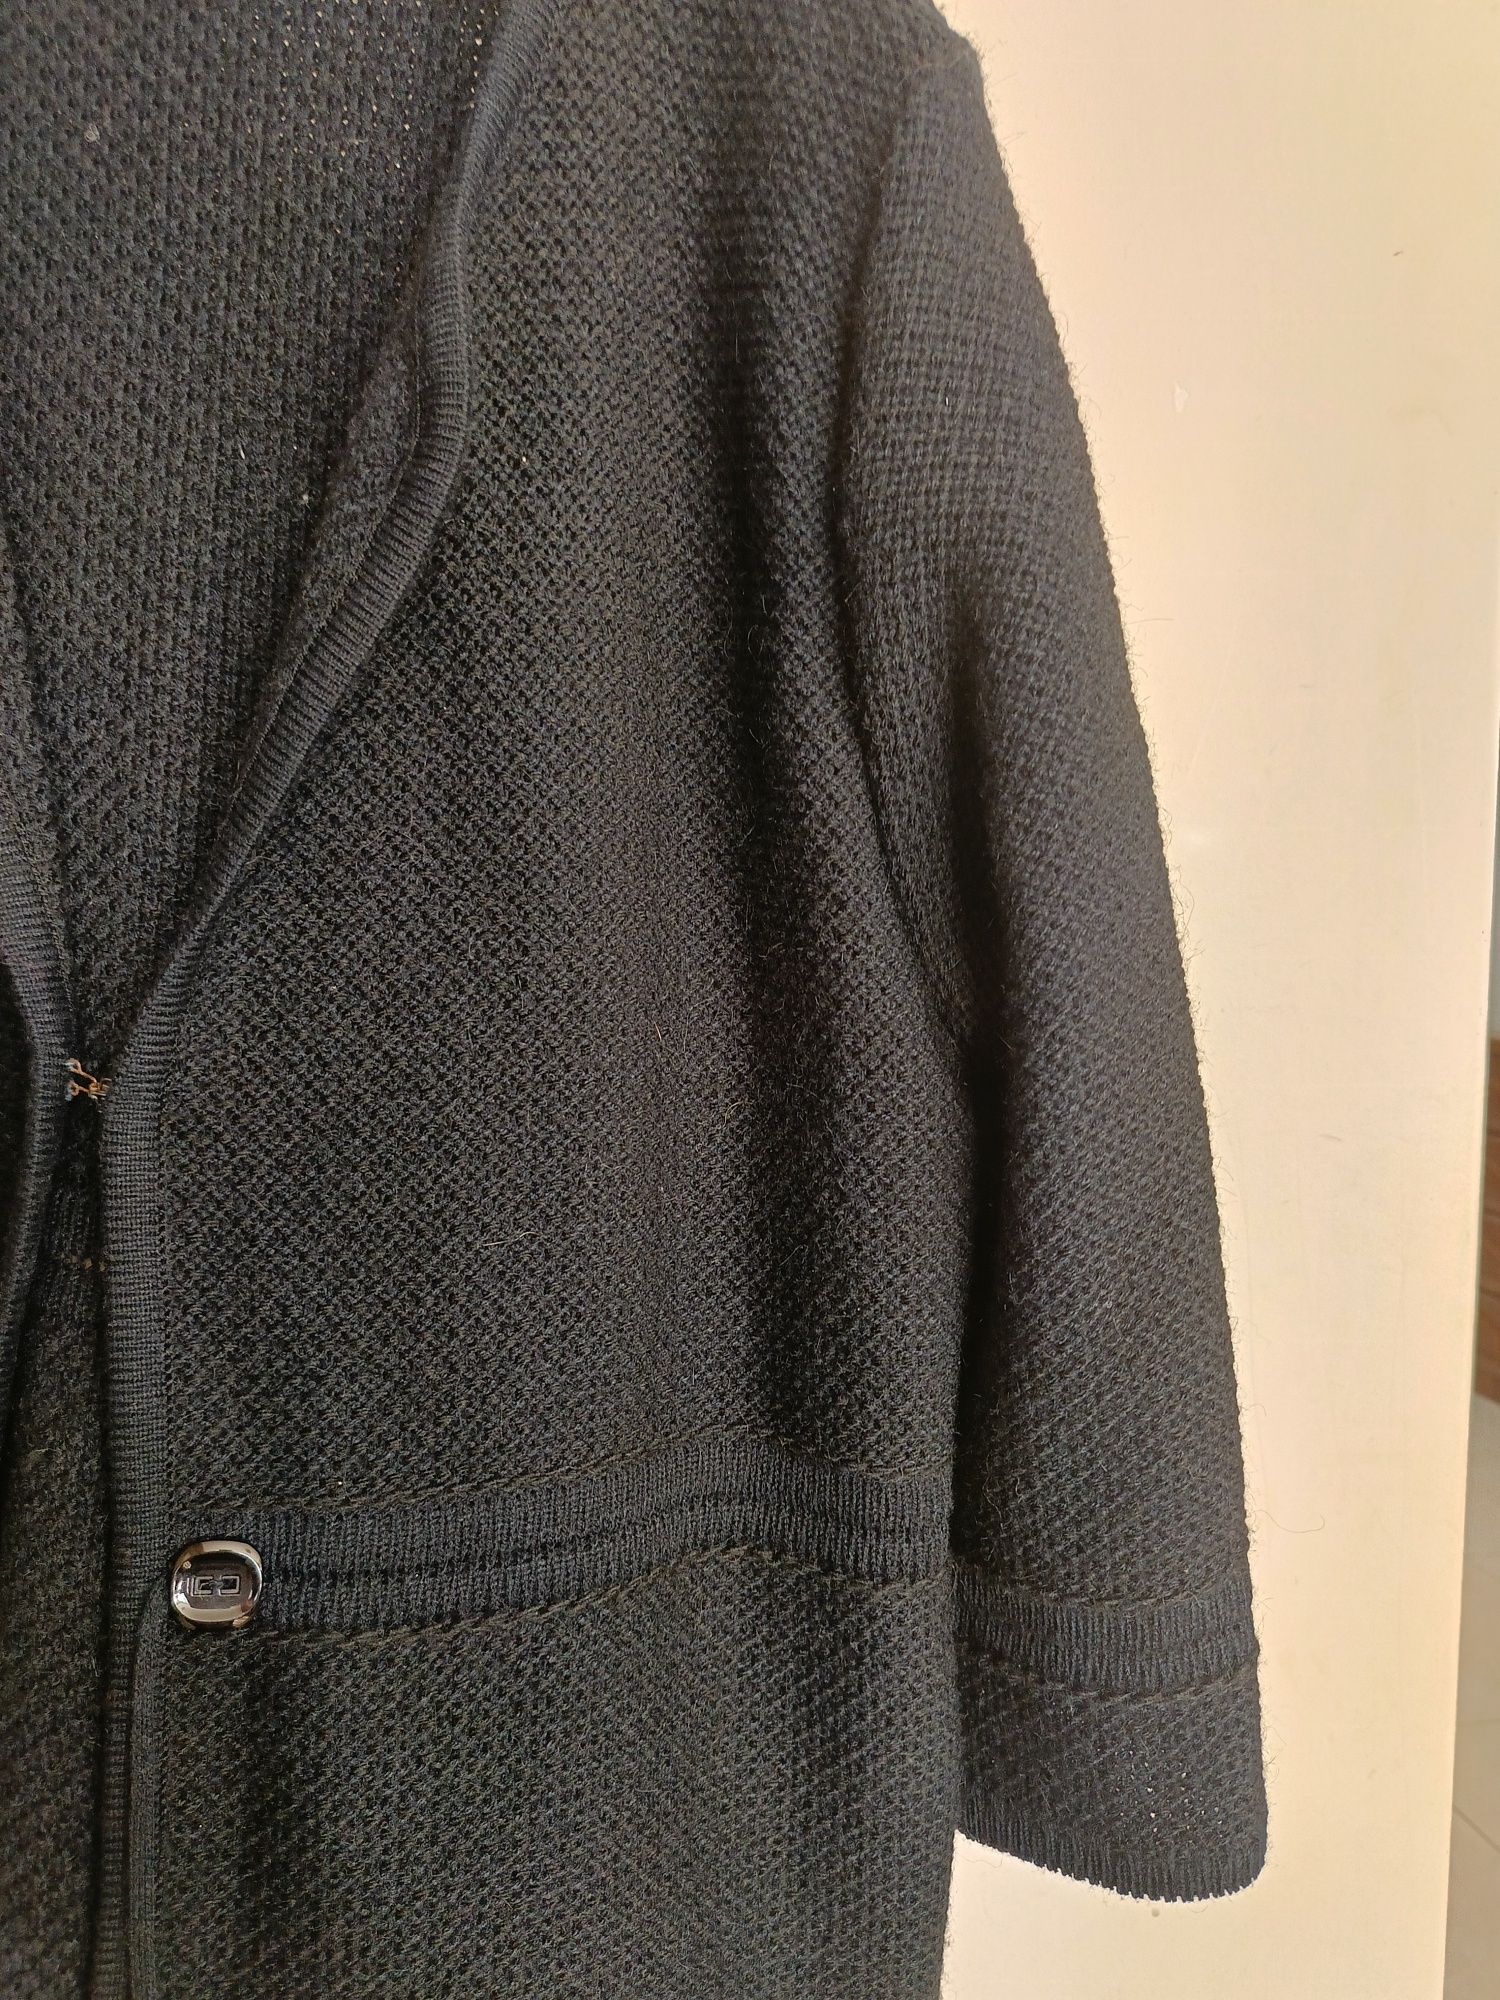 Sweter czarny 48 kardigan narzutka